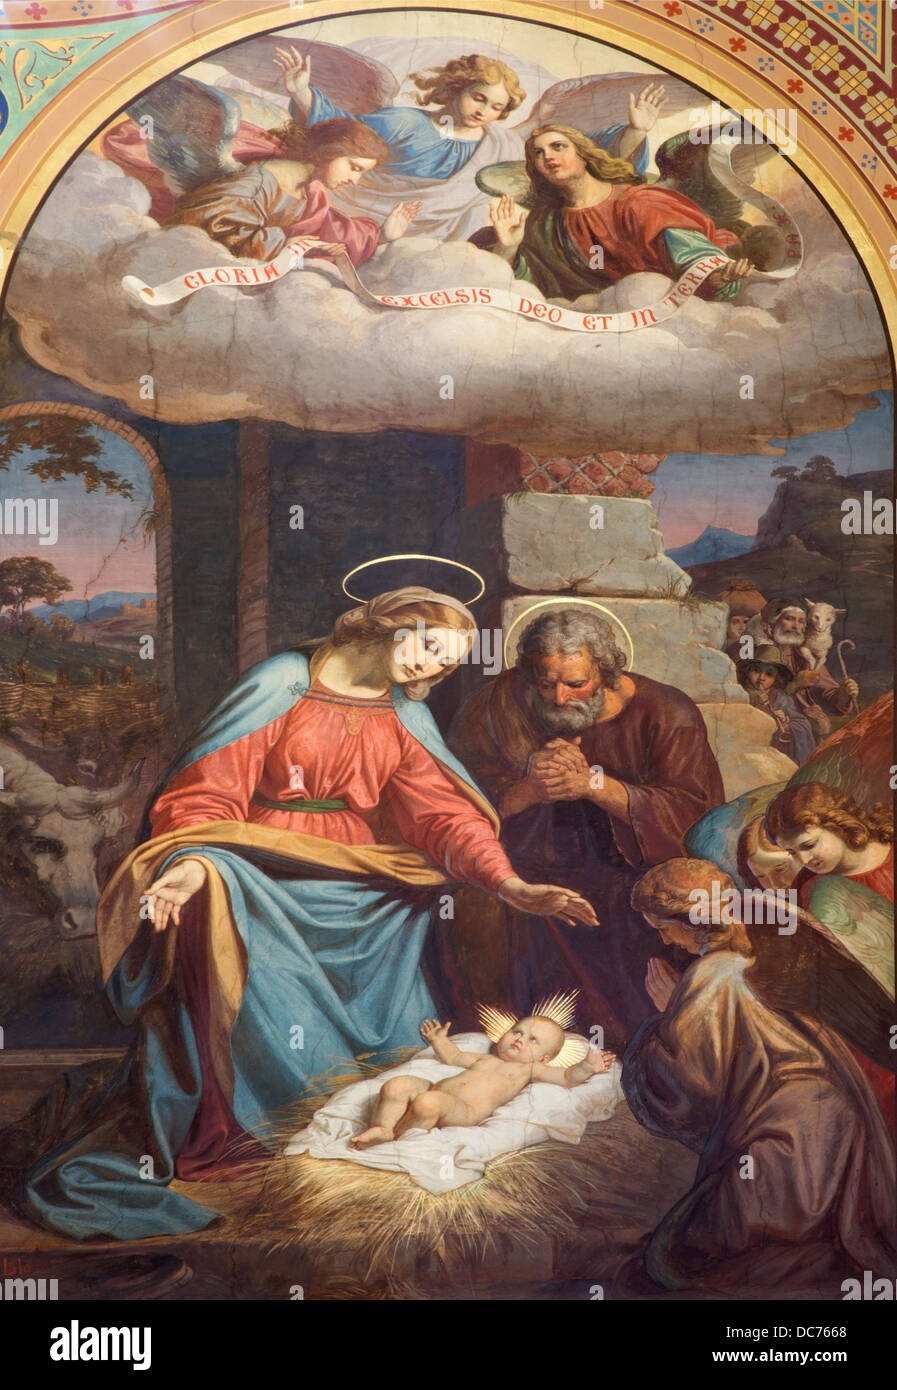 Wien - Juli 27: Fresko der Krippe von Karl von Blaas vom 19. Jhdt. im Kirchenschiff der Altlerchenfelder Kirche Stockfoto